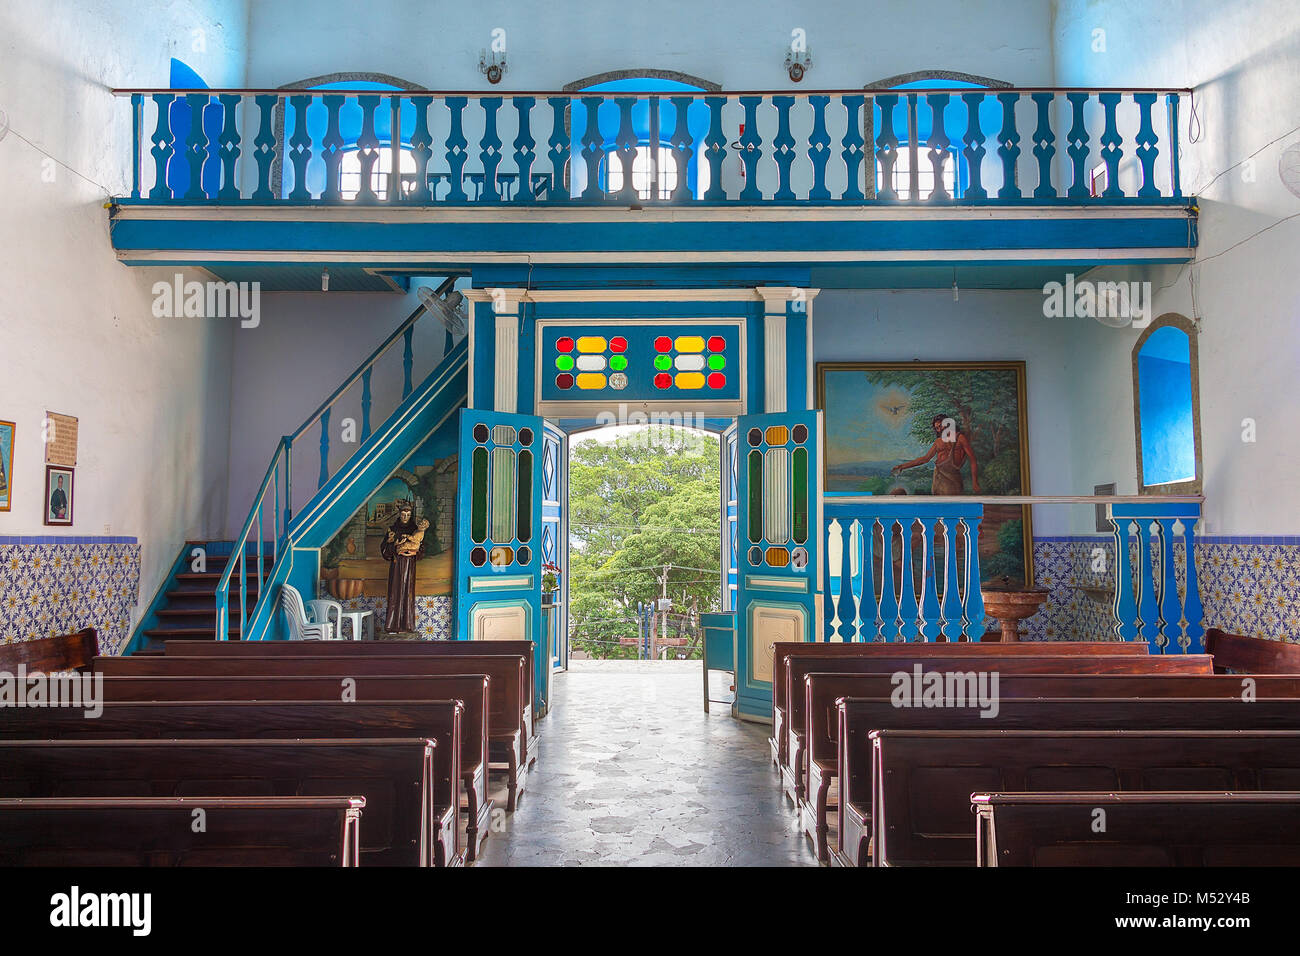 Ilhabela, São Pablo, Brasil - febrero 17th, 2018: Interior de la iglesia de Nuestra Señora de Ayuda (Nossa Senhora da Ajuda) al Prof. Alfredo Oliani squ Foto de stock